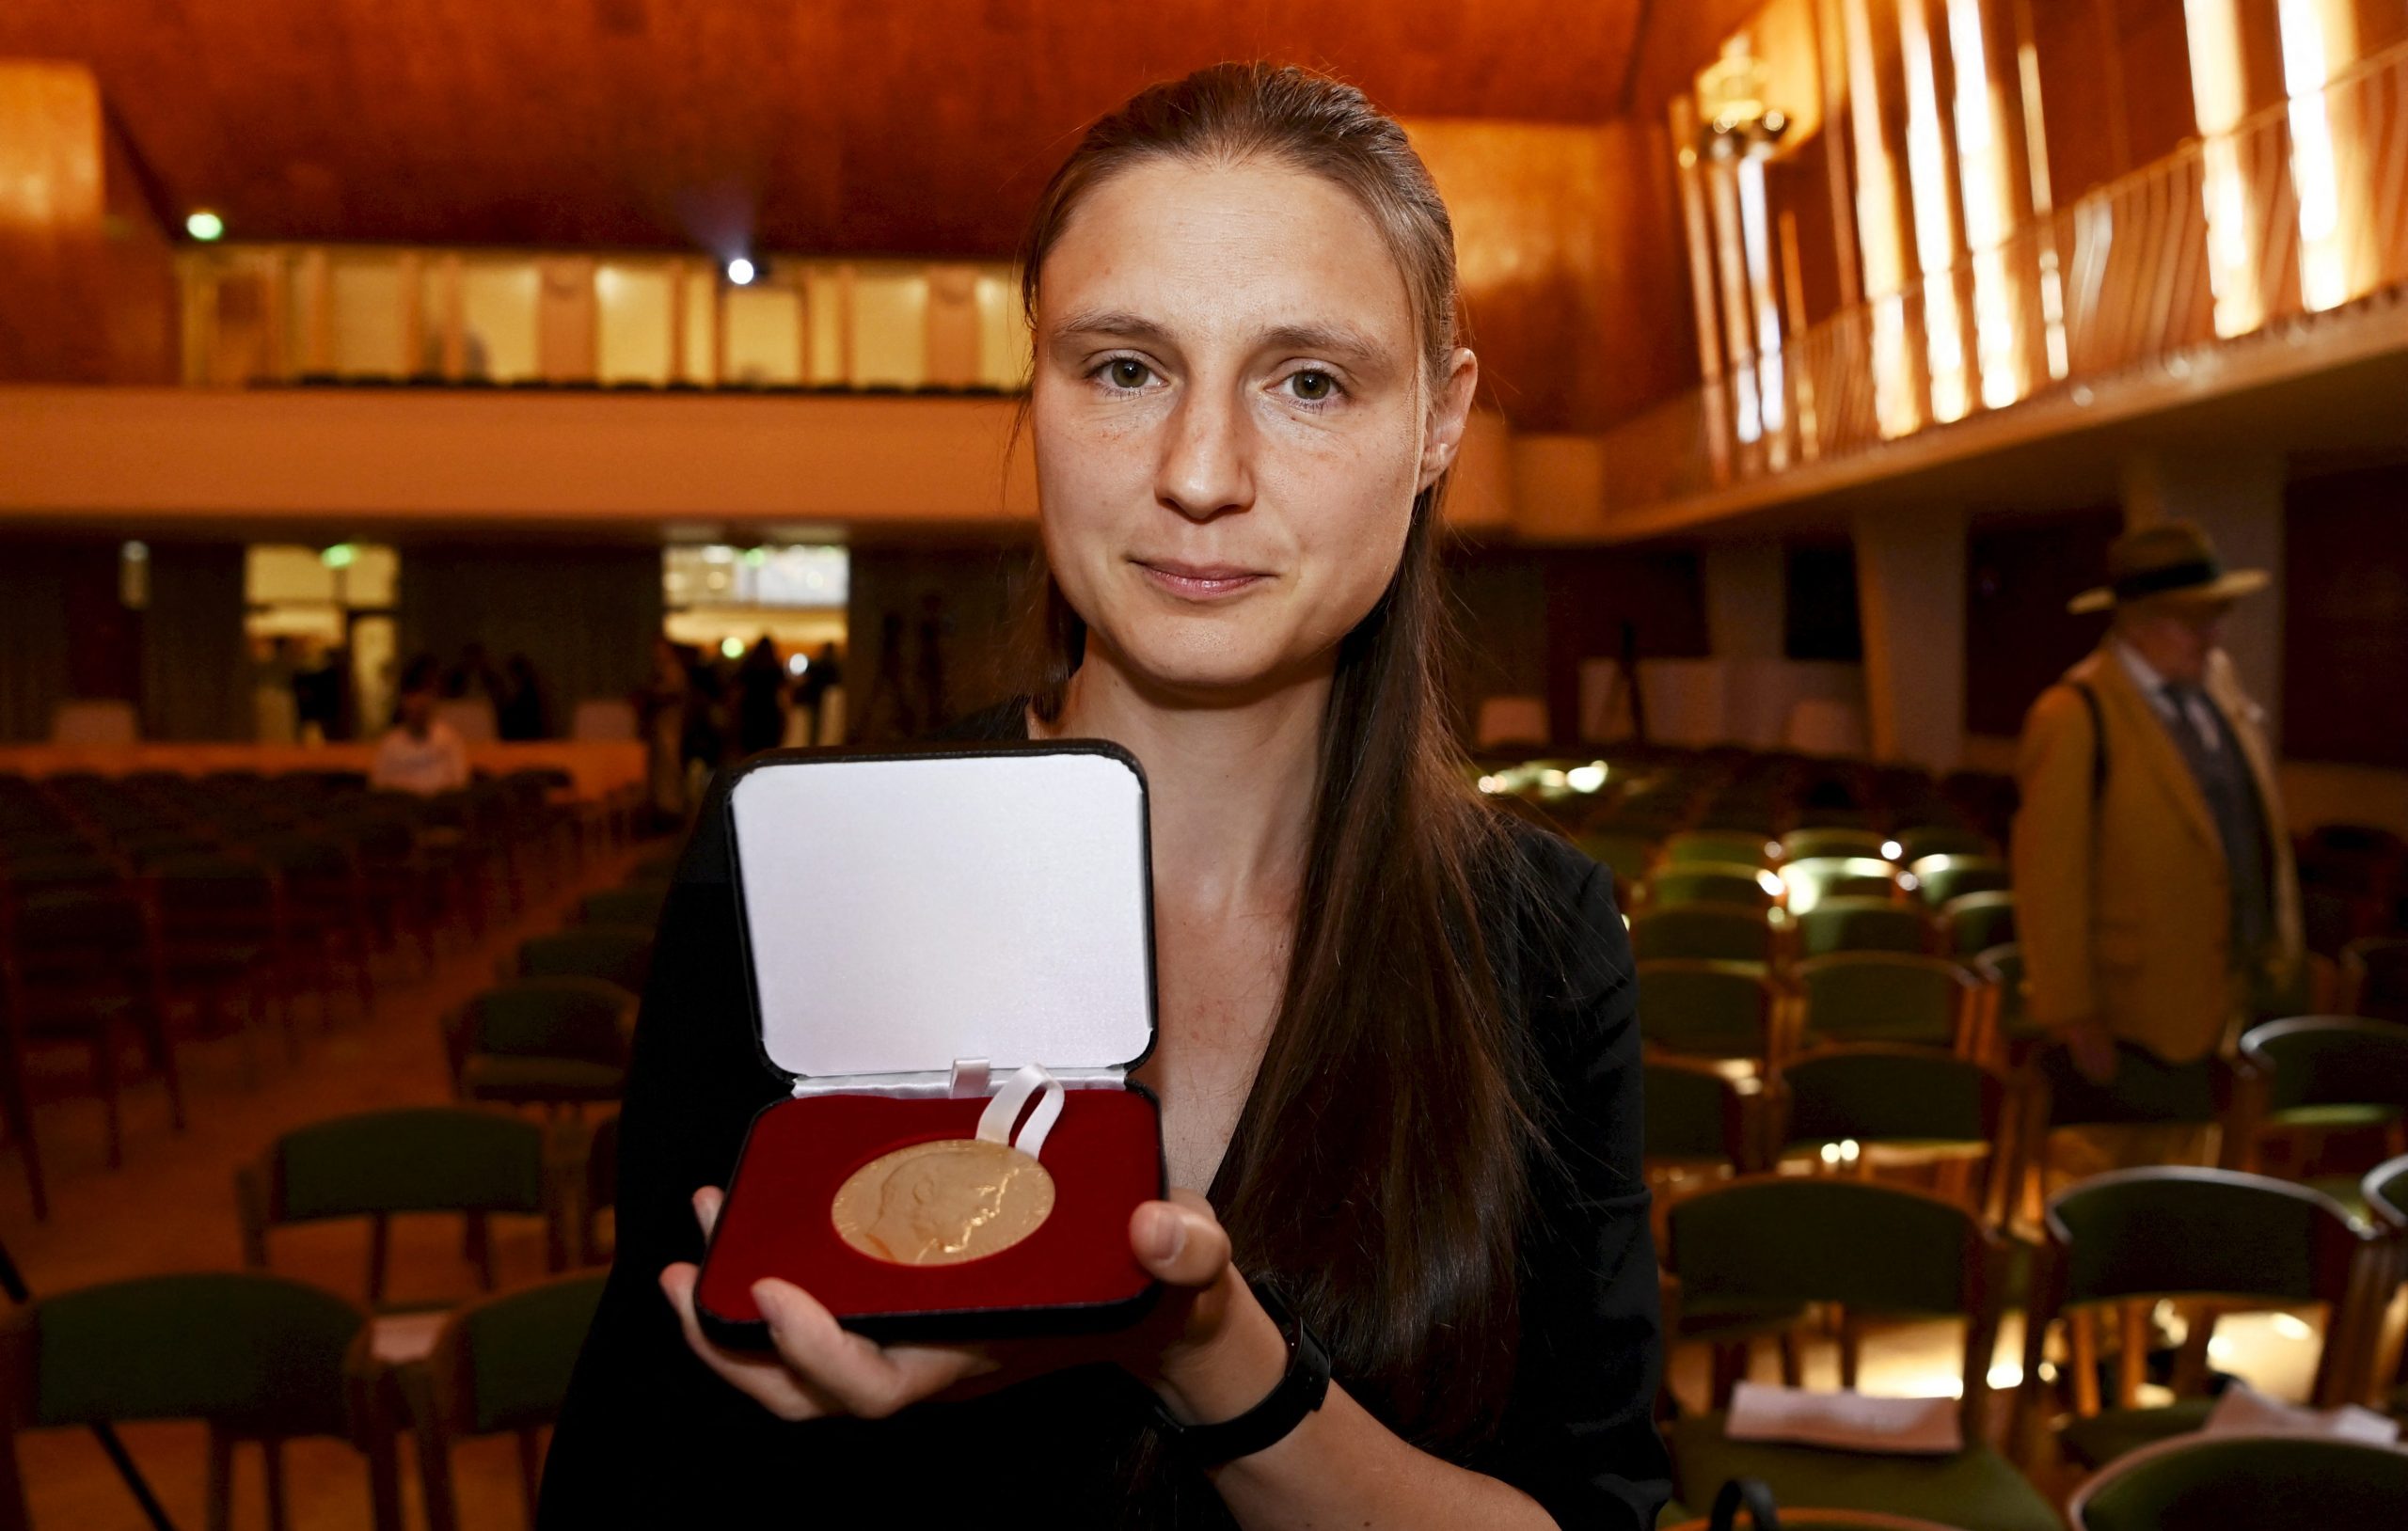 乌克兰学者摘数学诺贝尔奖 史上第2名女性获奖